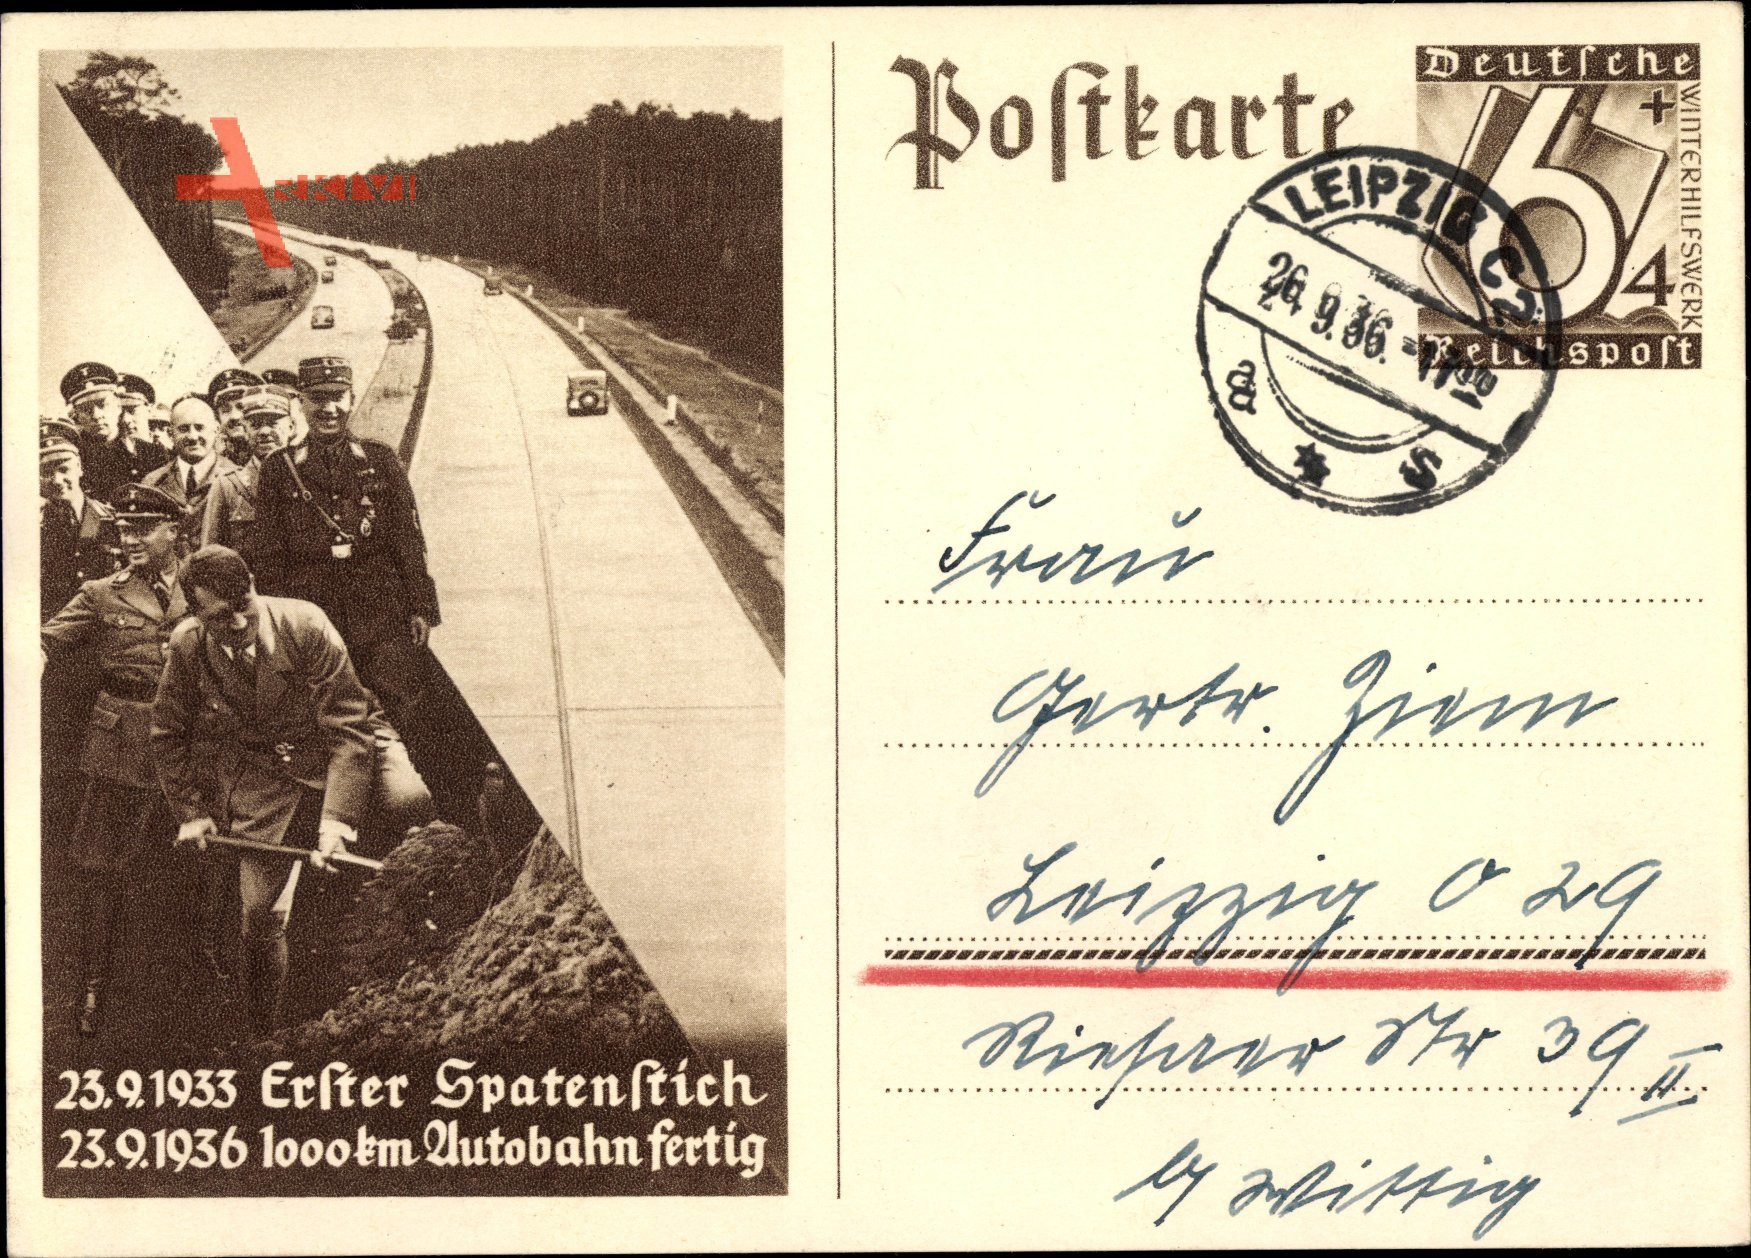 Ganzsachen Erster Spatenstich am 23.09.1933, Autobahnbau, Adolf Hitler, 1000 km Autobahn fertig